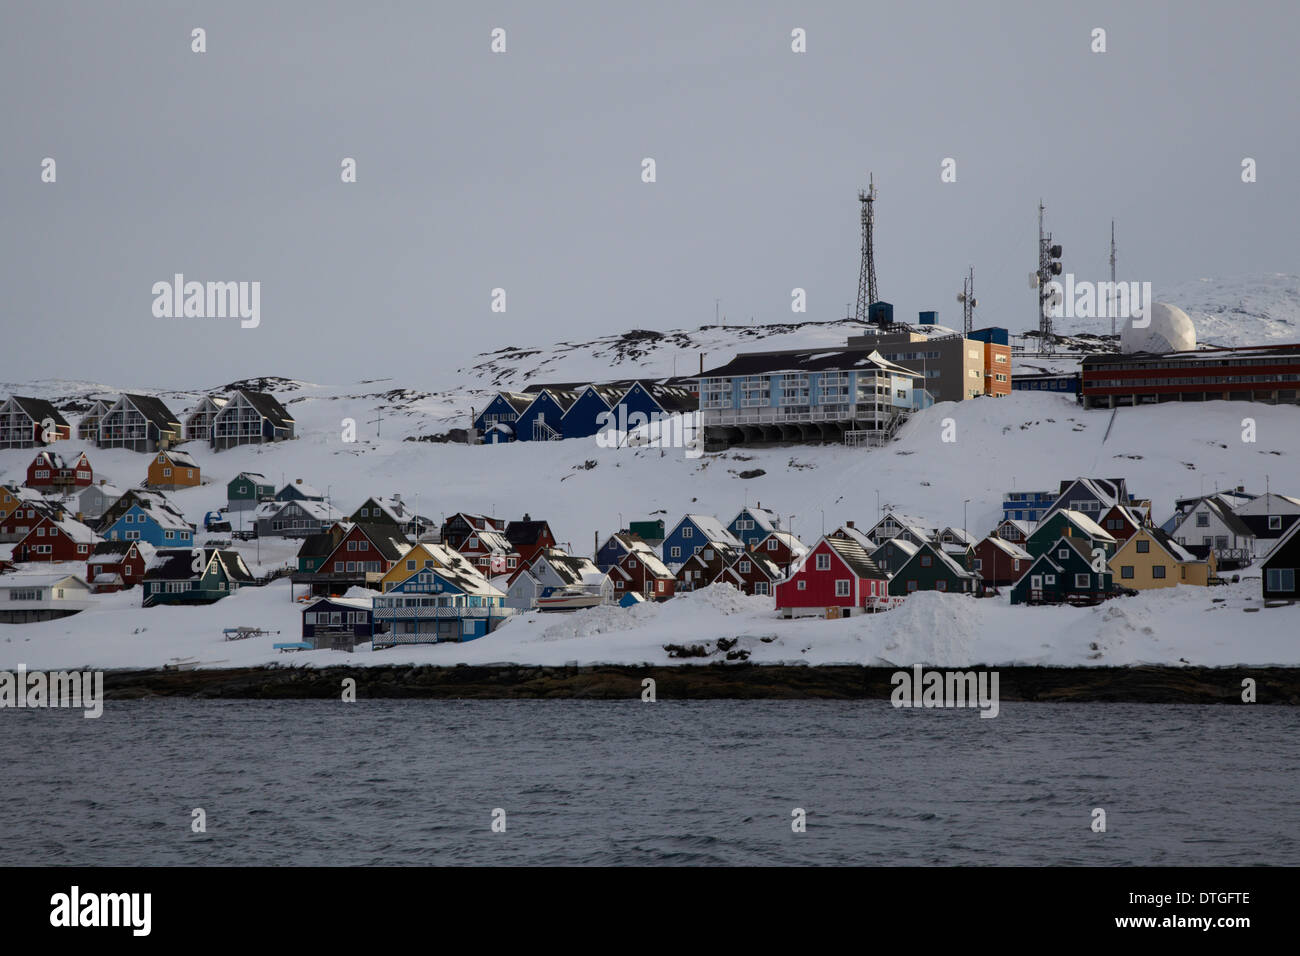 Vue depuis le bord de mer de la ville de Nuuk, Groenland Capitale Banque D'Images